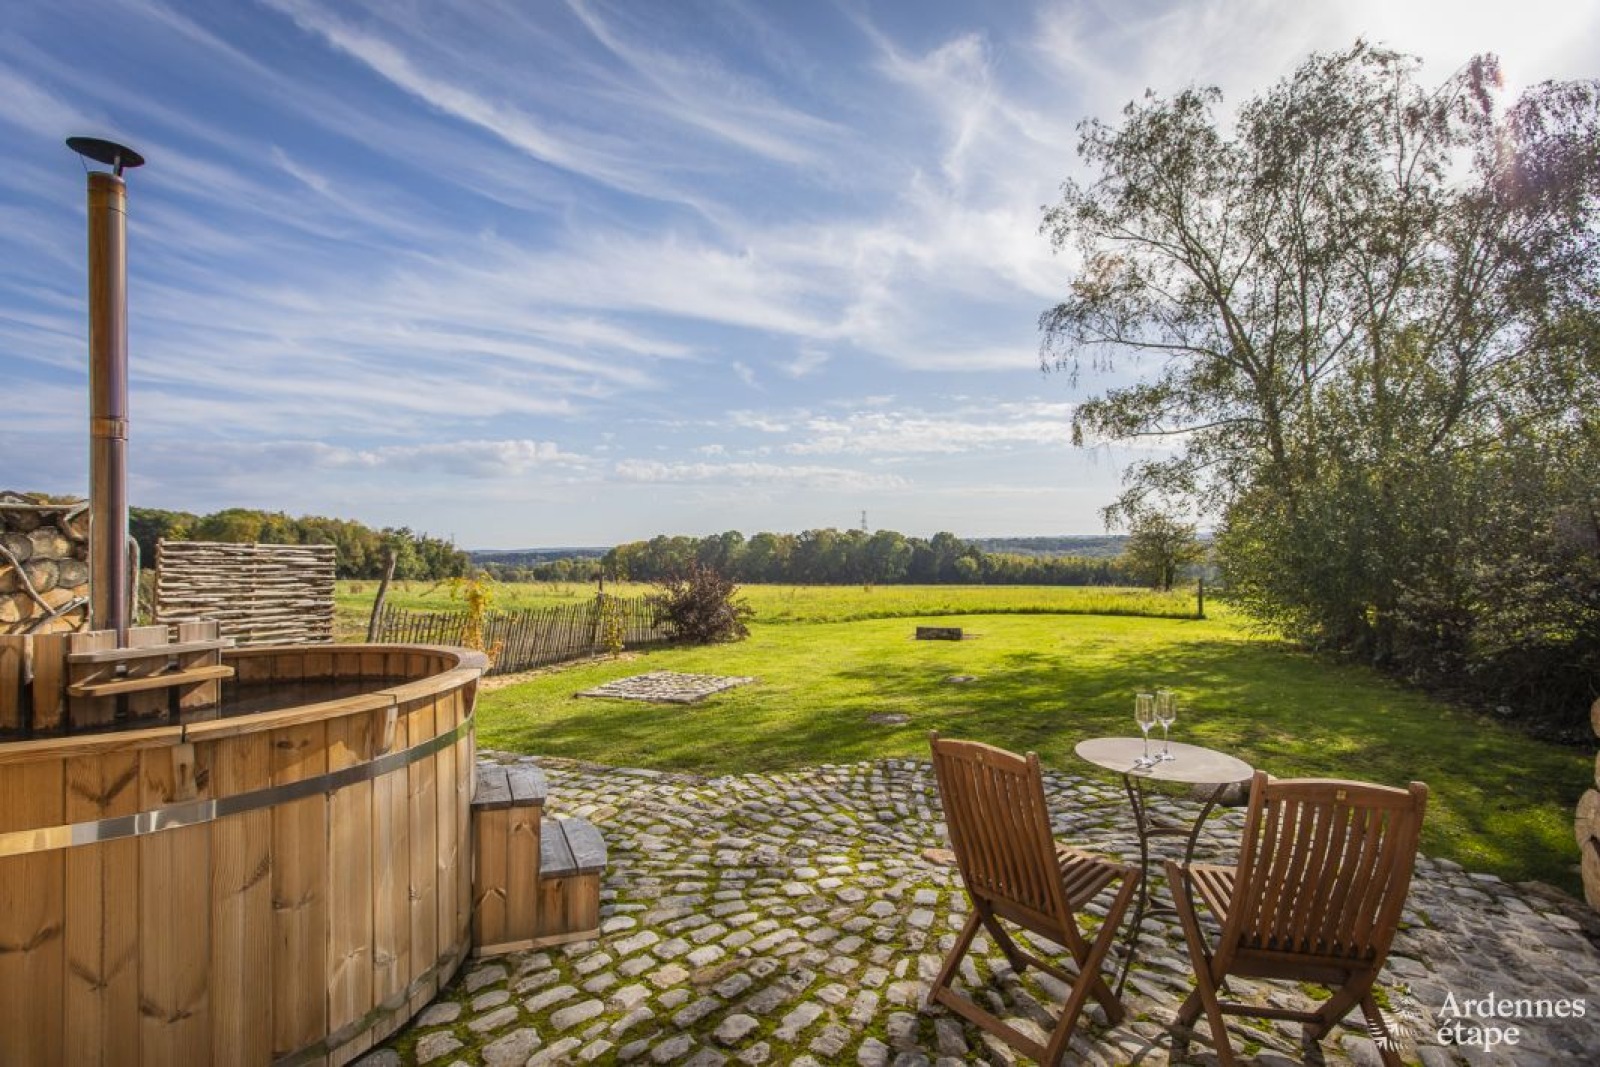 Sauna im Freien unter einem schönen blauen Himmel - Ferienhäuser und Ferienwohnungen in den Ardennen